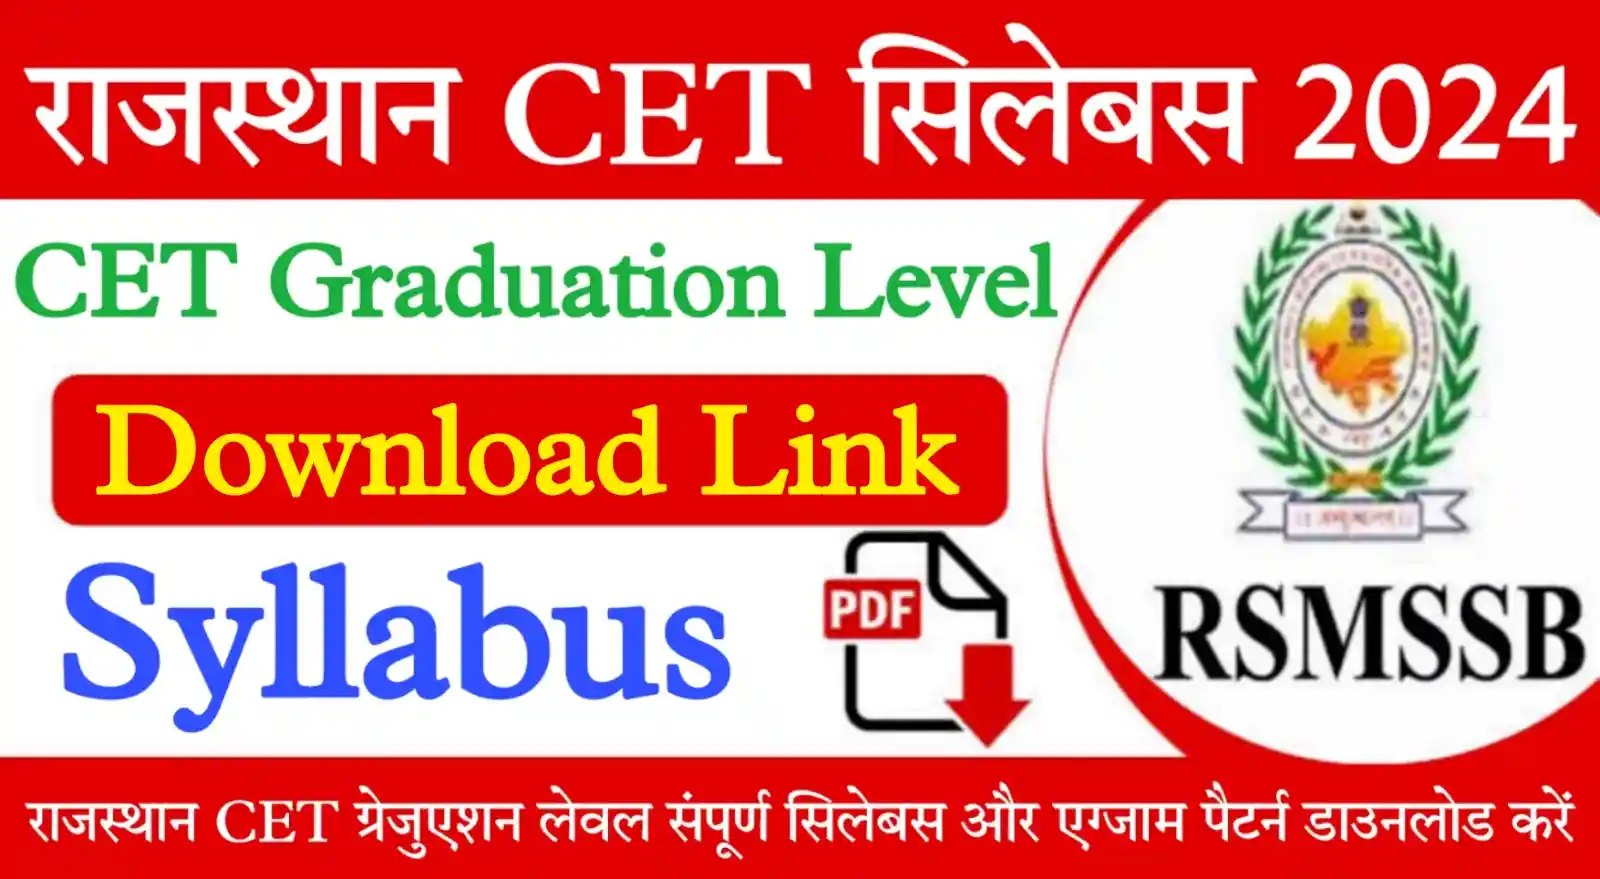 Rajasthan CET Graduation Level Syllabus 2024 राजस्थान सीईटी ग्रेजुएशन लेवल सिलेबस 2024 यहां से डाउनलोड करें